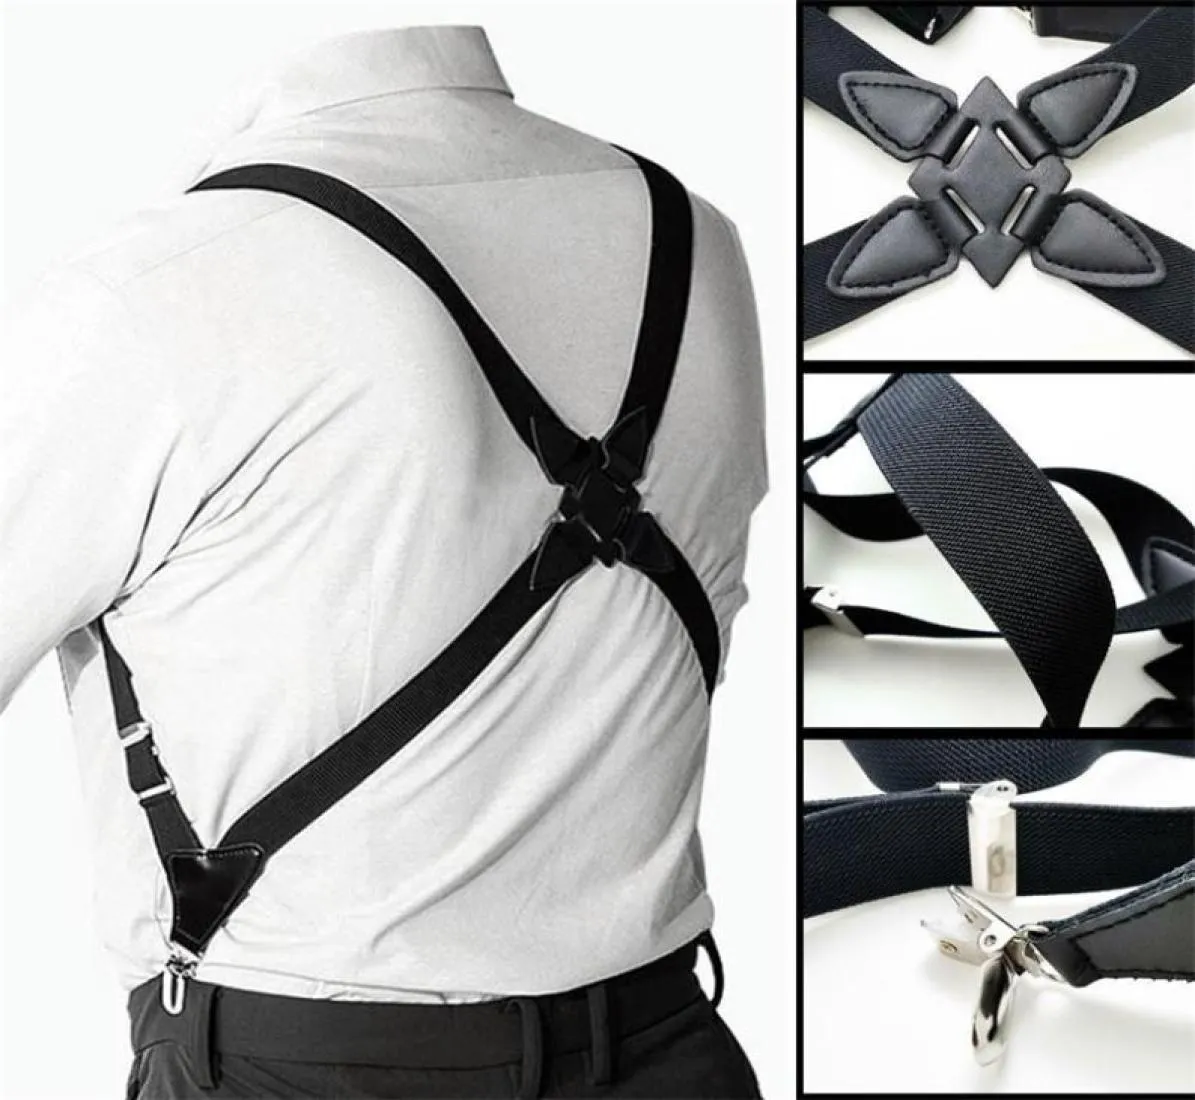 Suspensórios masculinos ajustáveis, cinta elástica em forma de x, clipe lateral sobre calças suspensas adultas, acessórios de vestuário 2205261648299